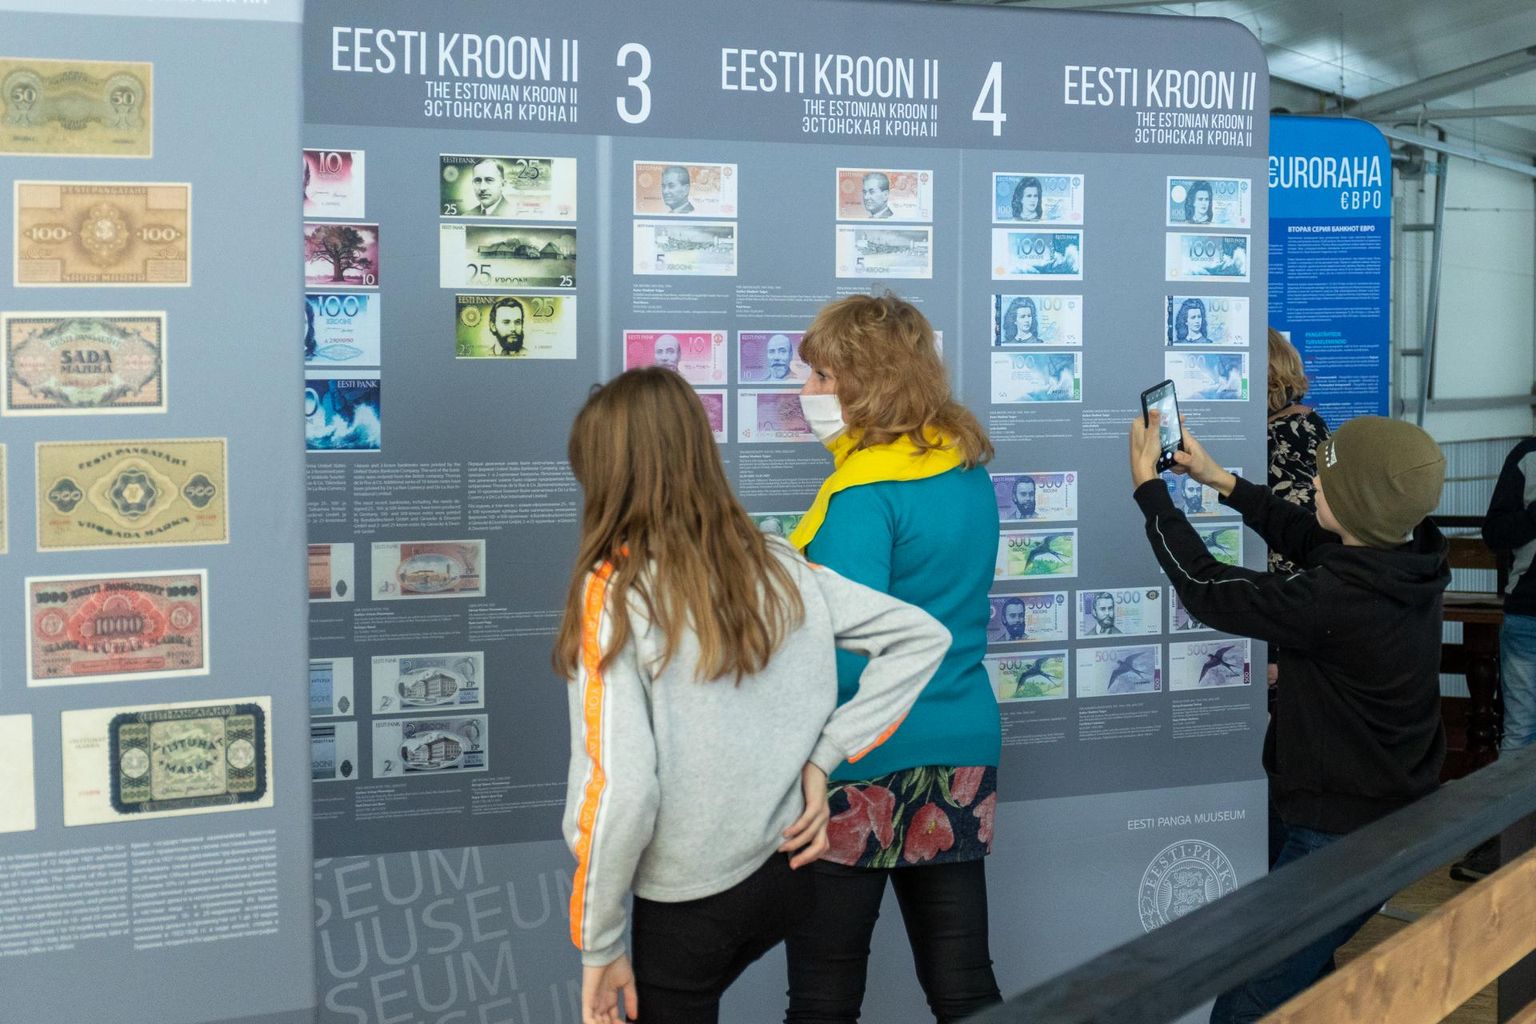 Rändnäitus “Eesti raha margast kroonini” ja “Euroraha” tutvustab Eesti raha ajalugu.